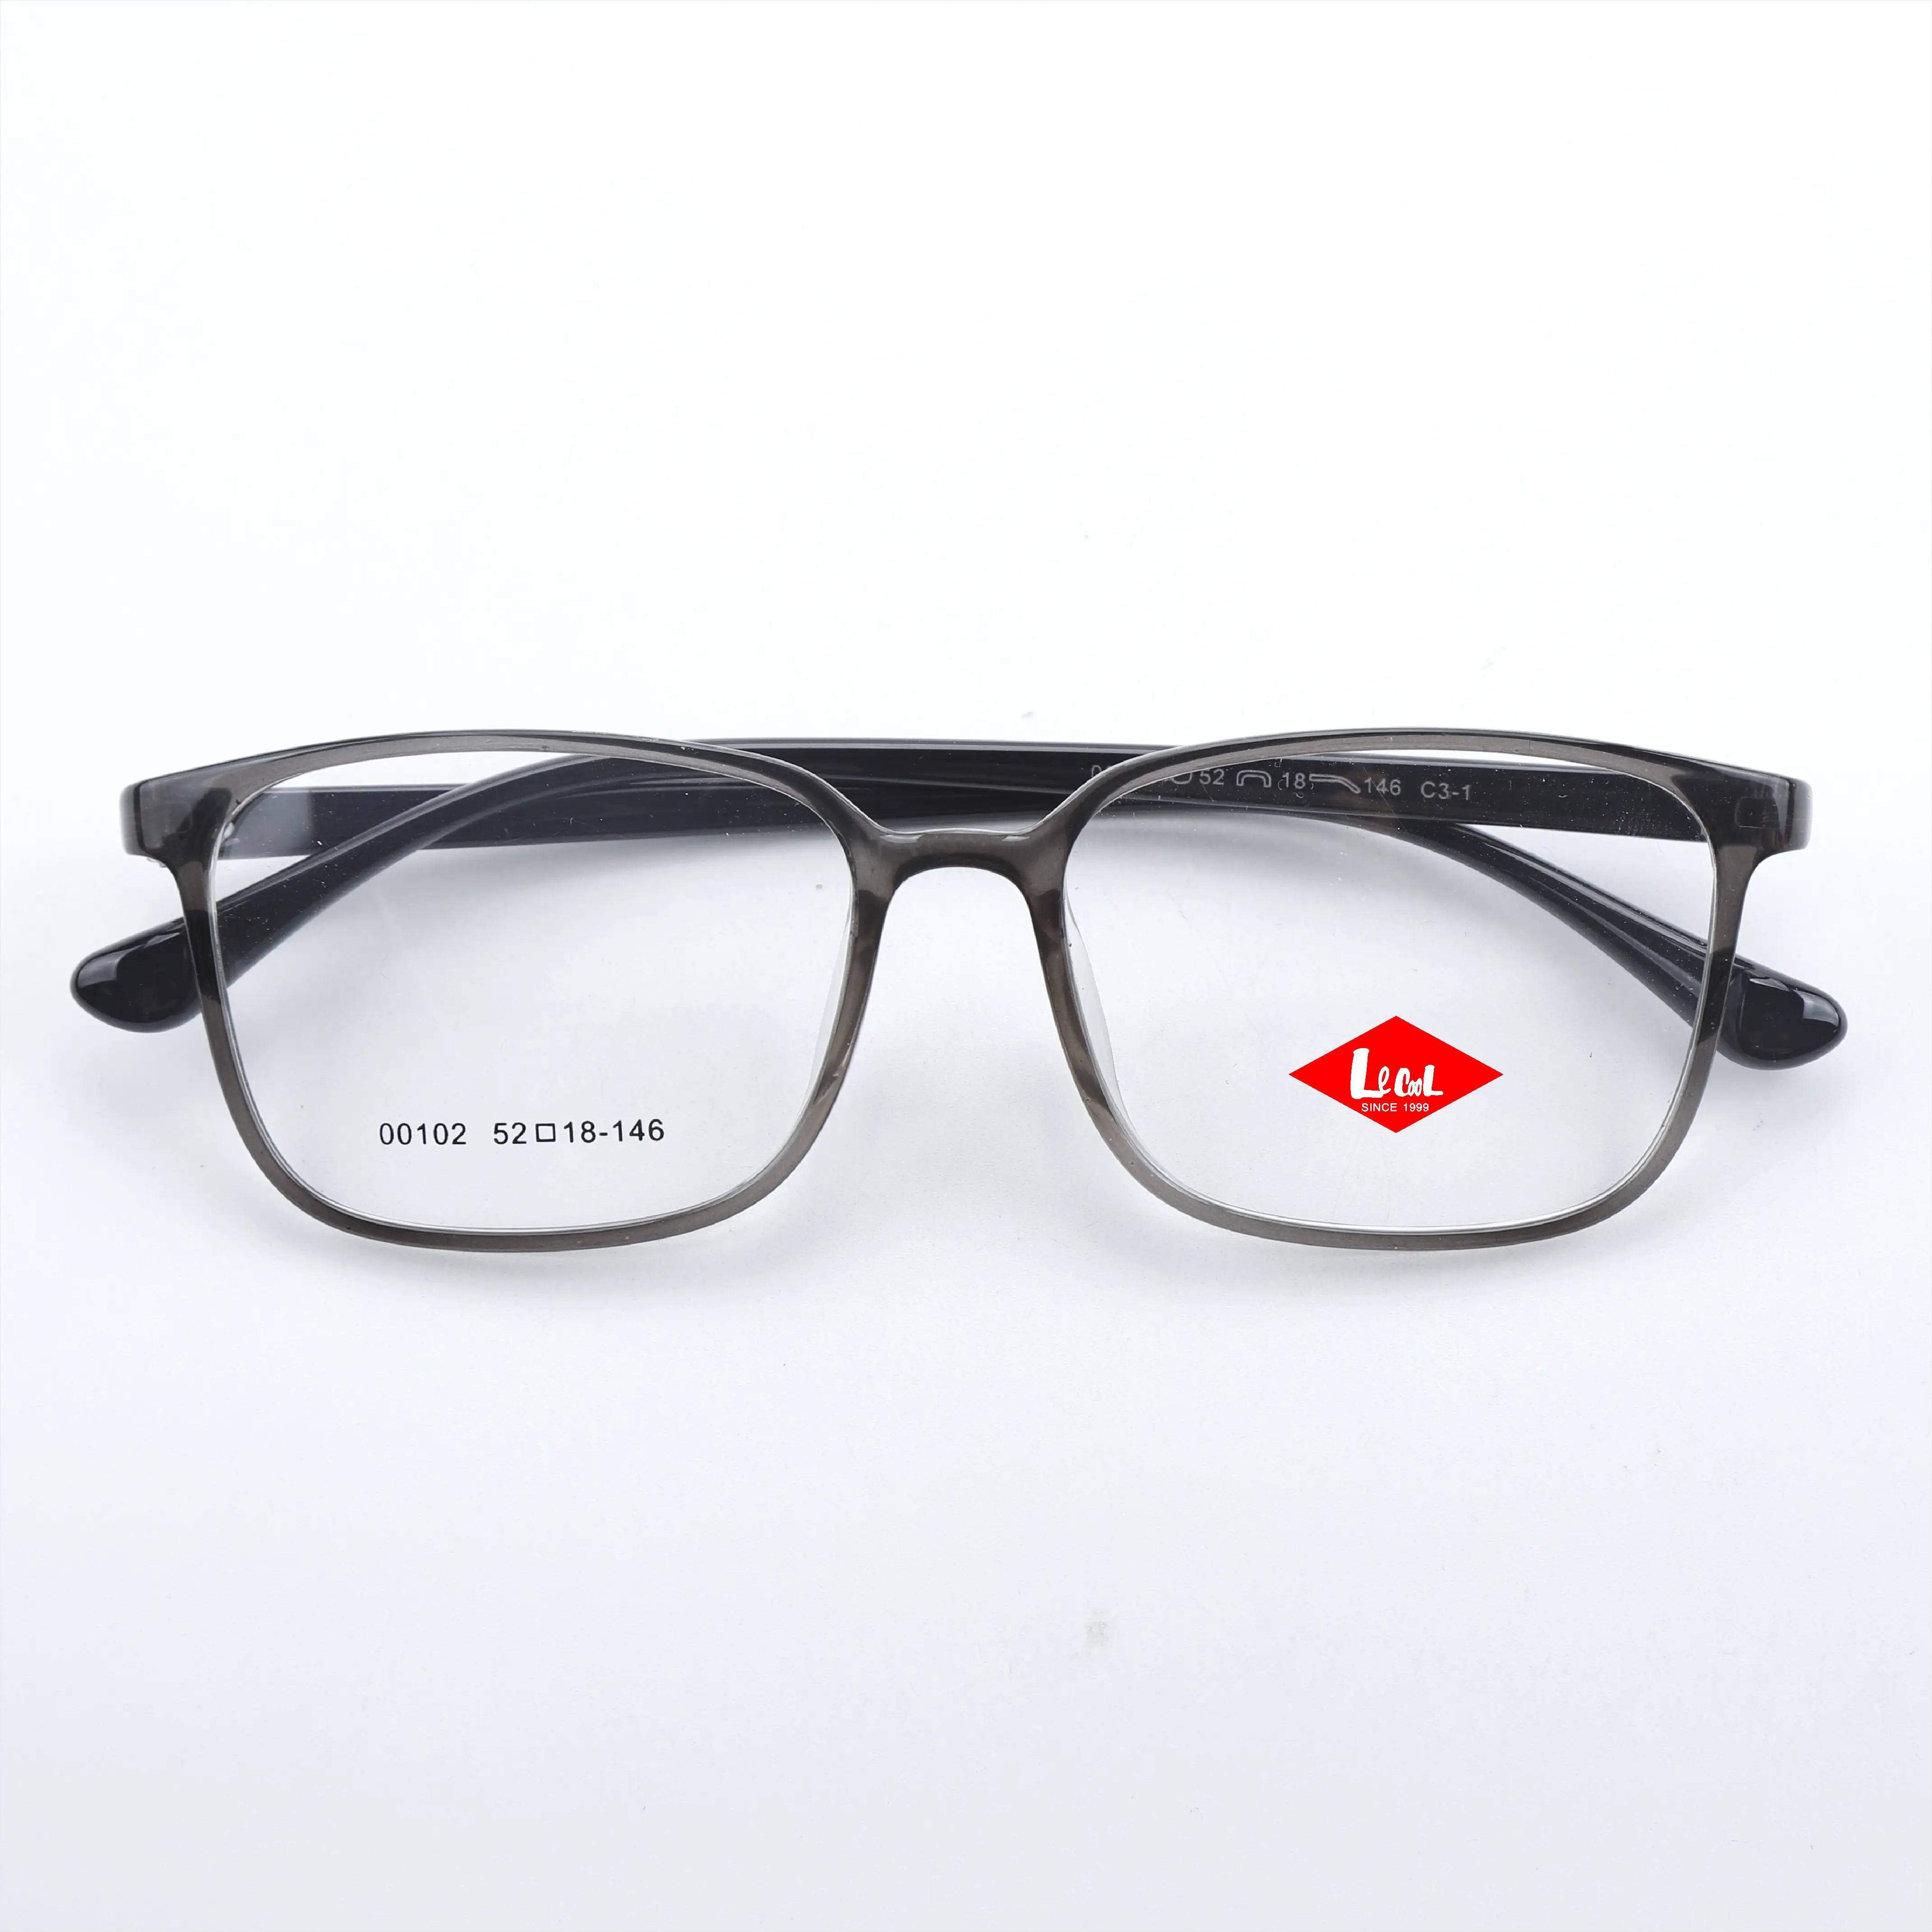 Newest TR90 Light Designer Glasses Custom Polarized SunglassesOptical Spectacle Specs for Men Flexible Frames Guangzhou